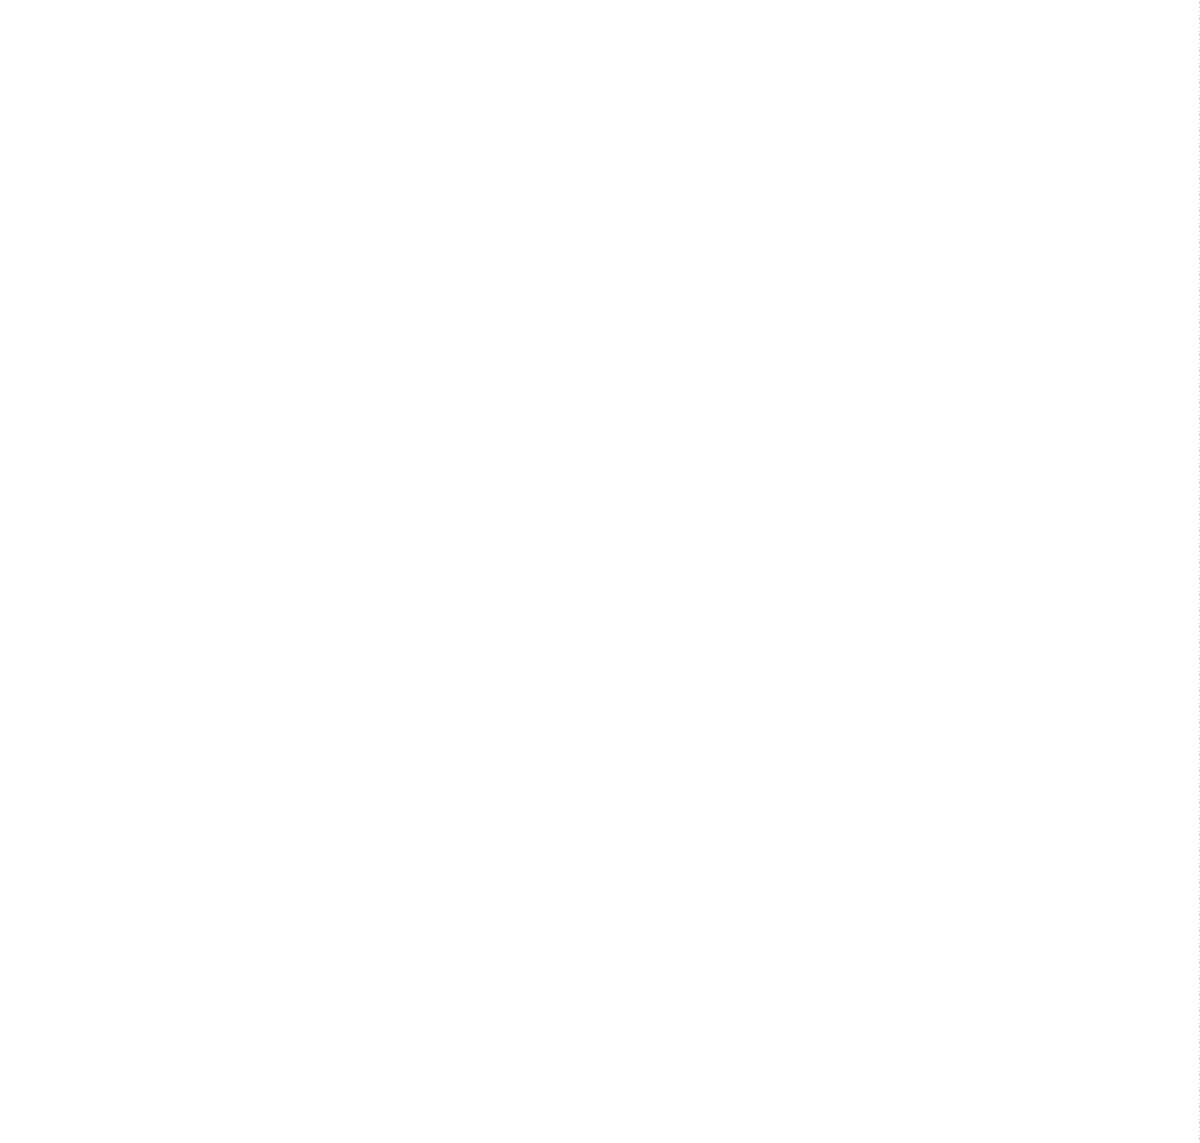 logo ubytovani hk